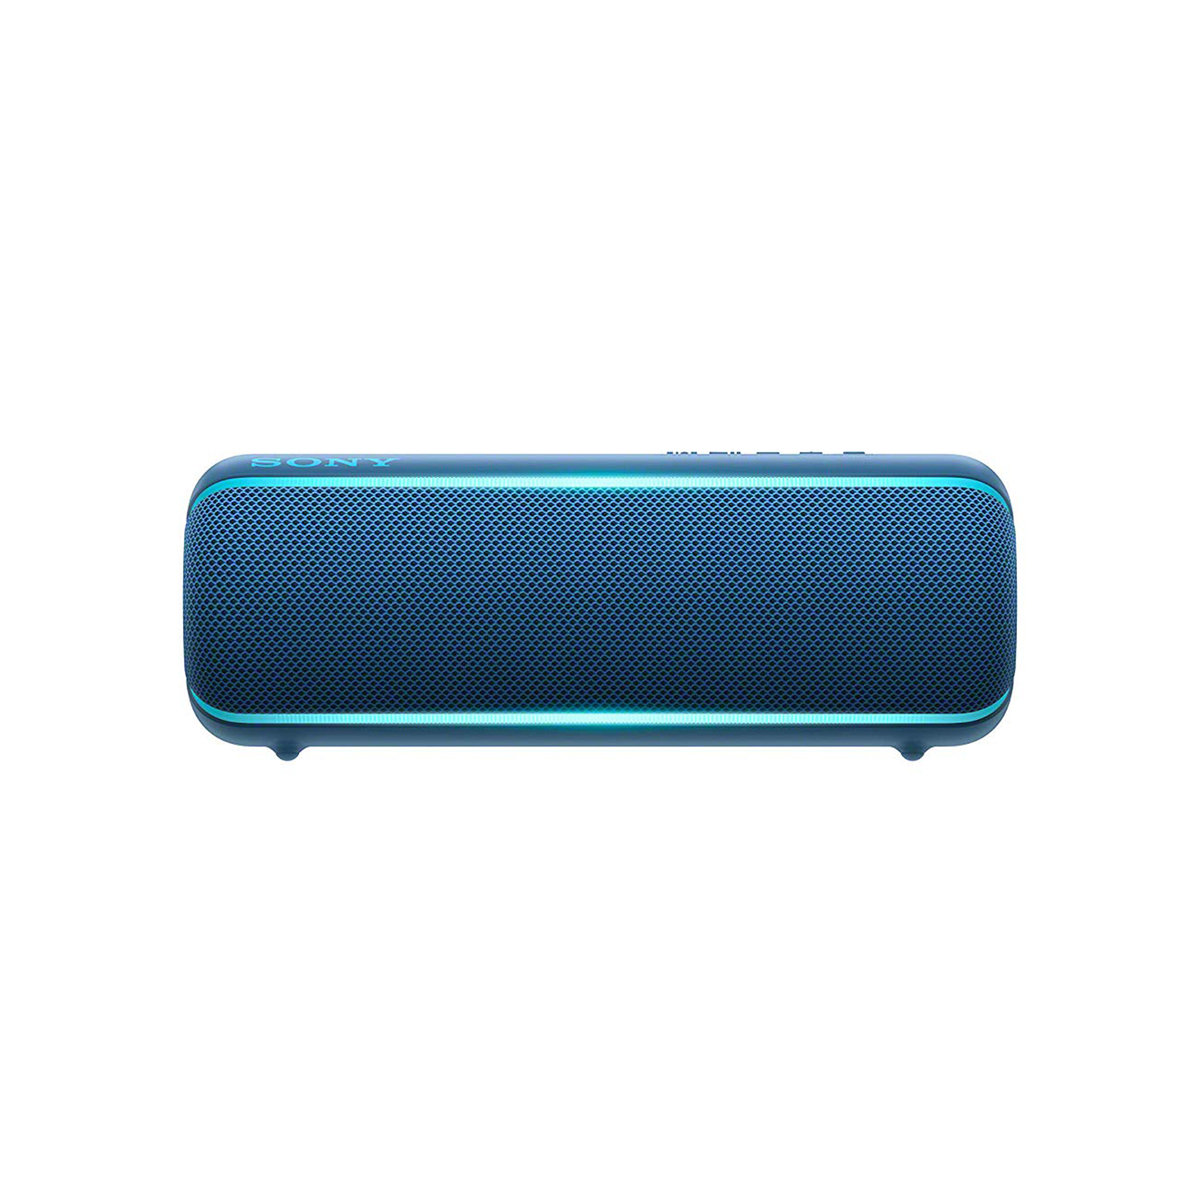 Sony Wireless Bluetooth Speaker SRS-XB22 Blue